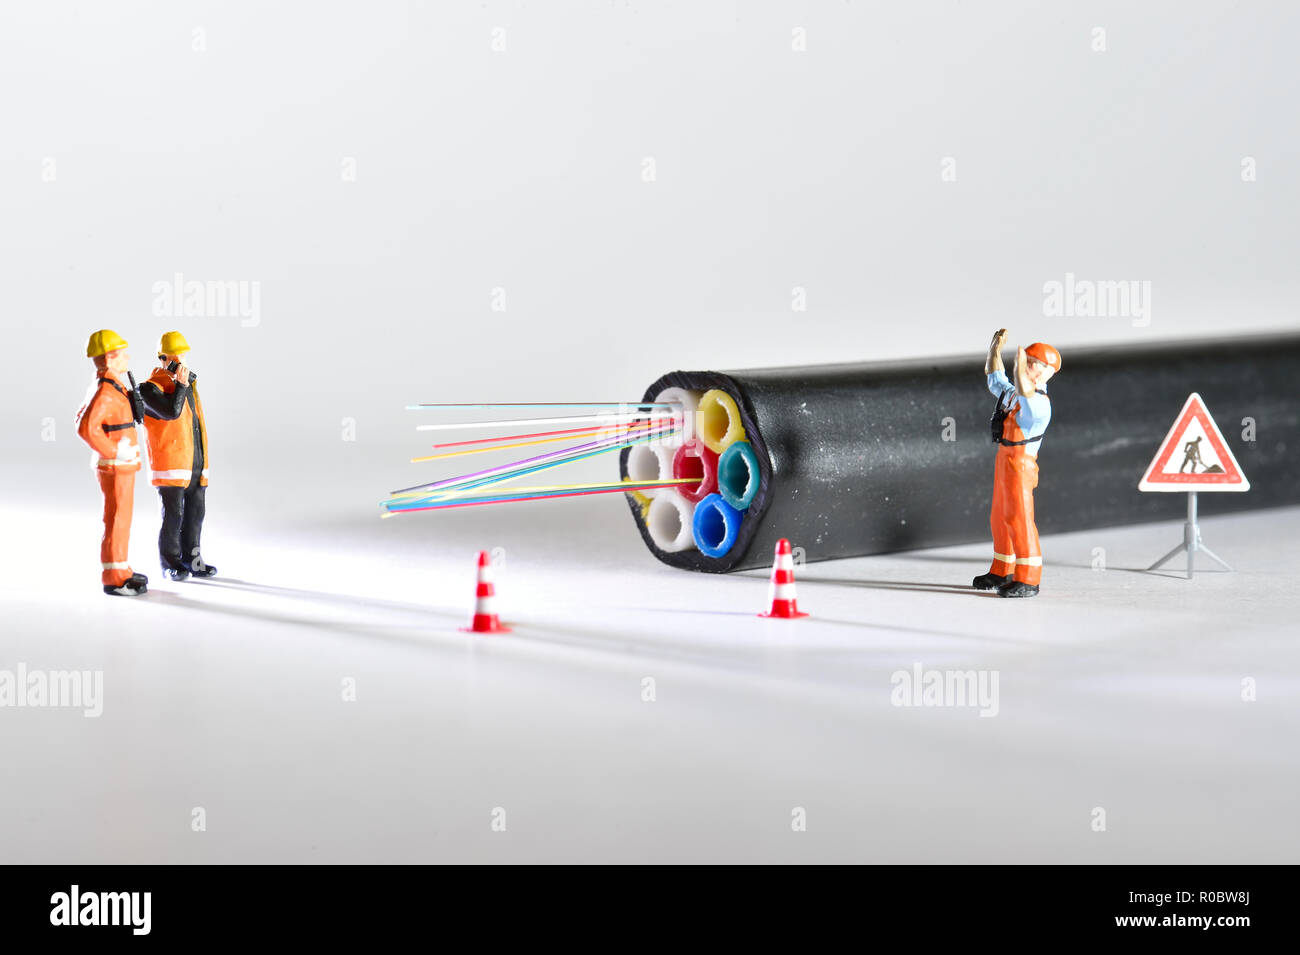 Ankunft der Fiber Optics Abbildung, Arbeit, mit Figuren und Kabel aus optischen Fasern. Stockfoto